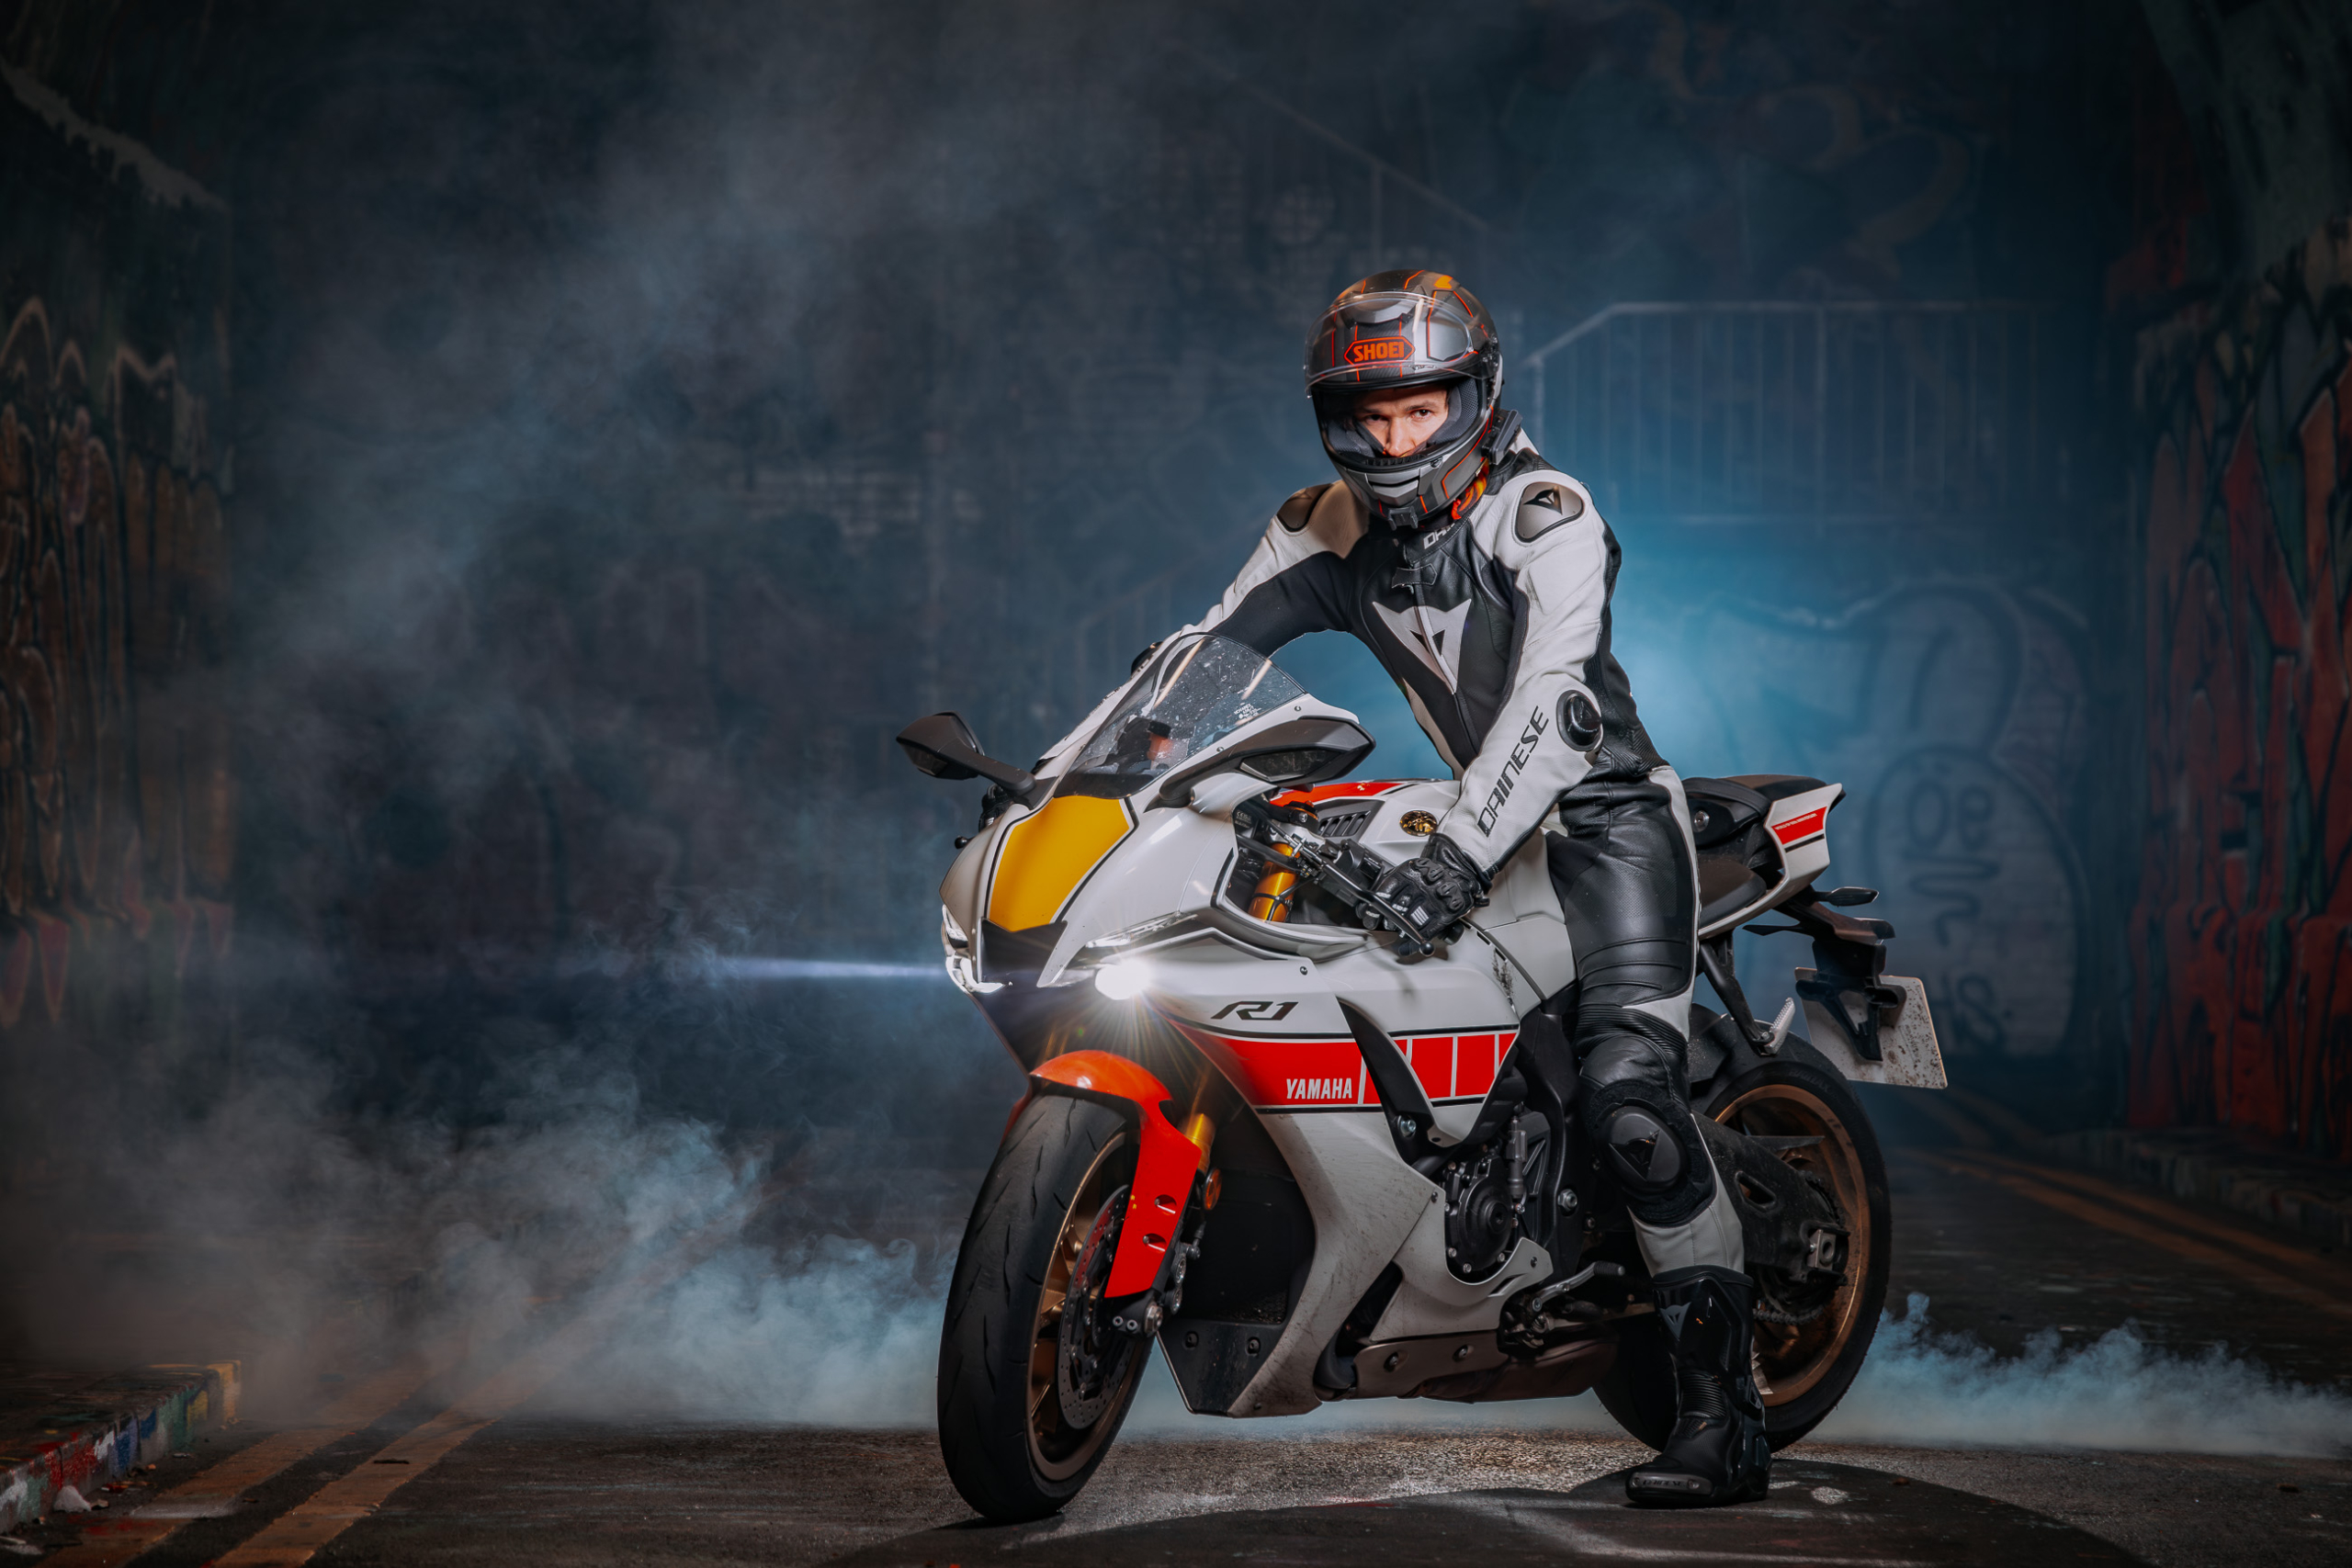 Motorcycle Photoshoot with smoke